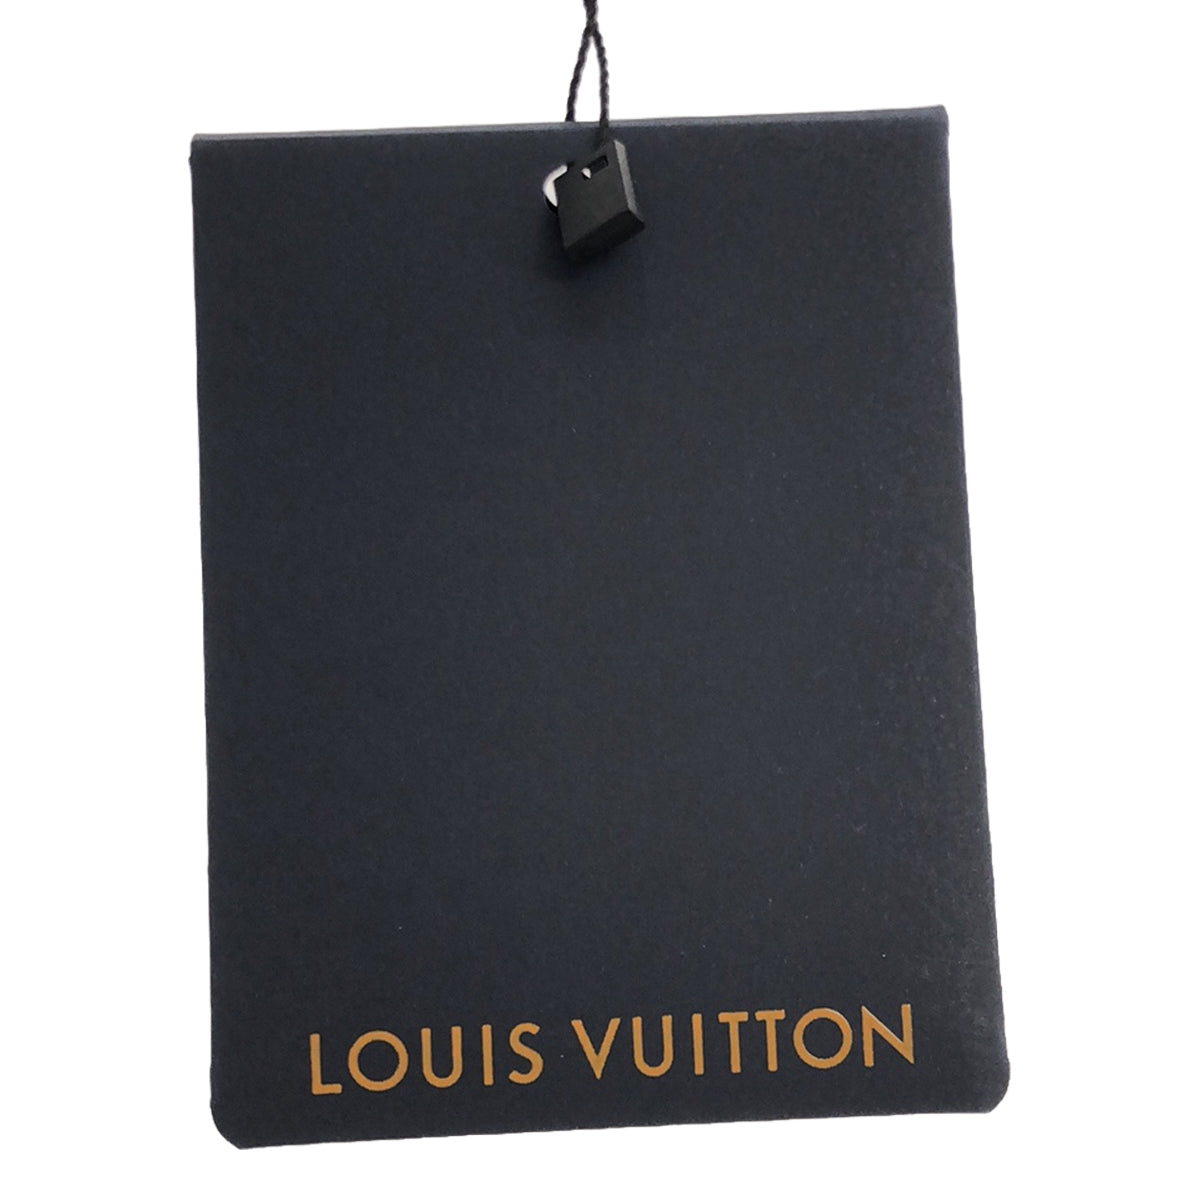 Louis Vuitton / ルイヴィトン | 1A7VTC / モノグラム レギンスウィズエラステックベルト パンツ | 34 | ブラ – KLD